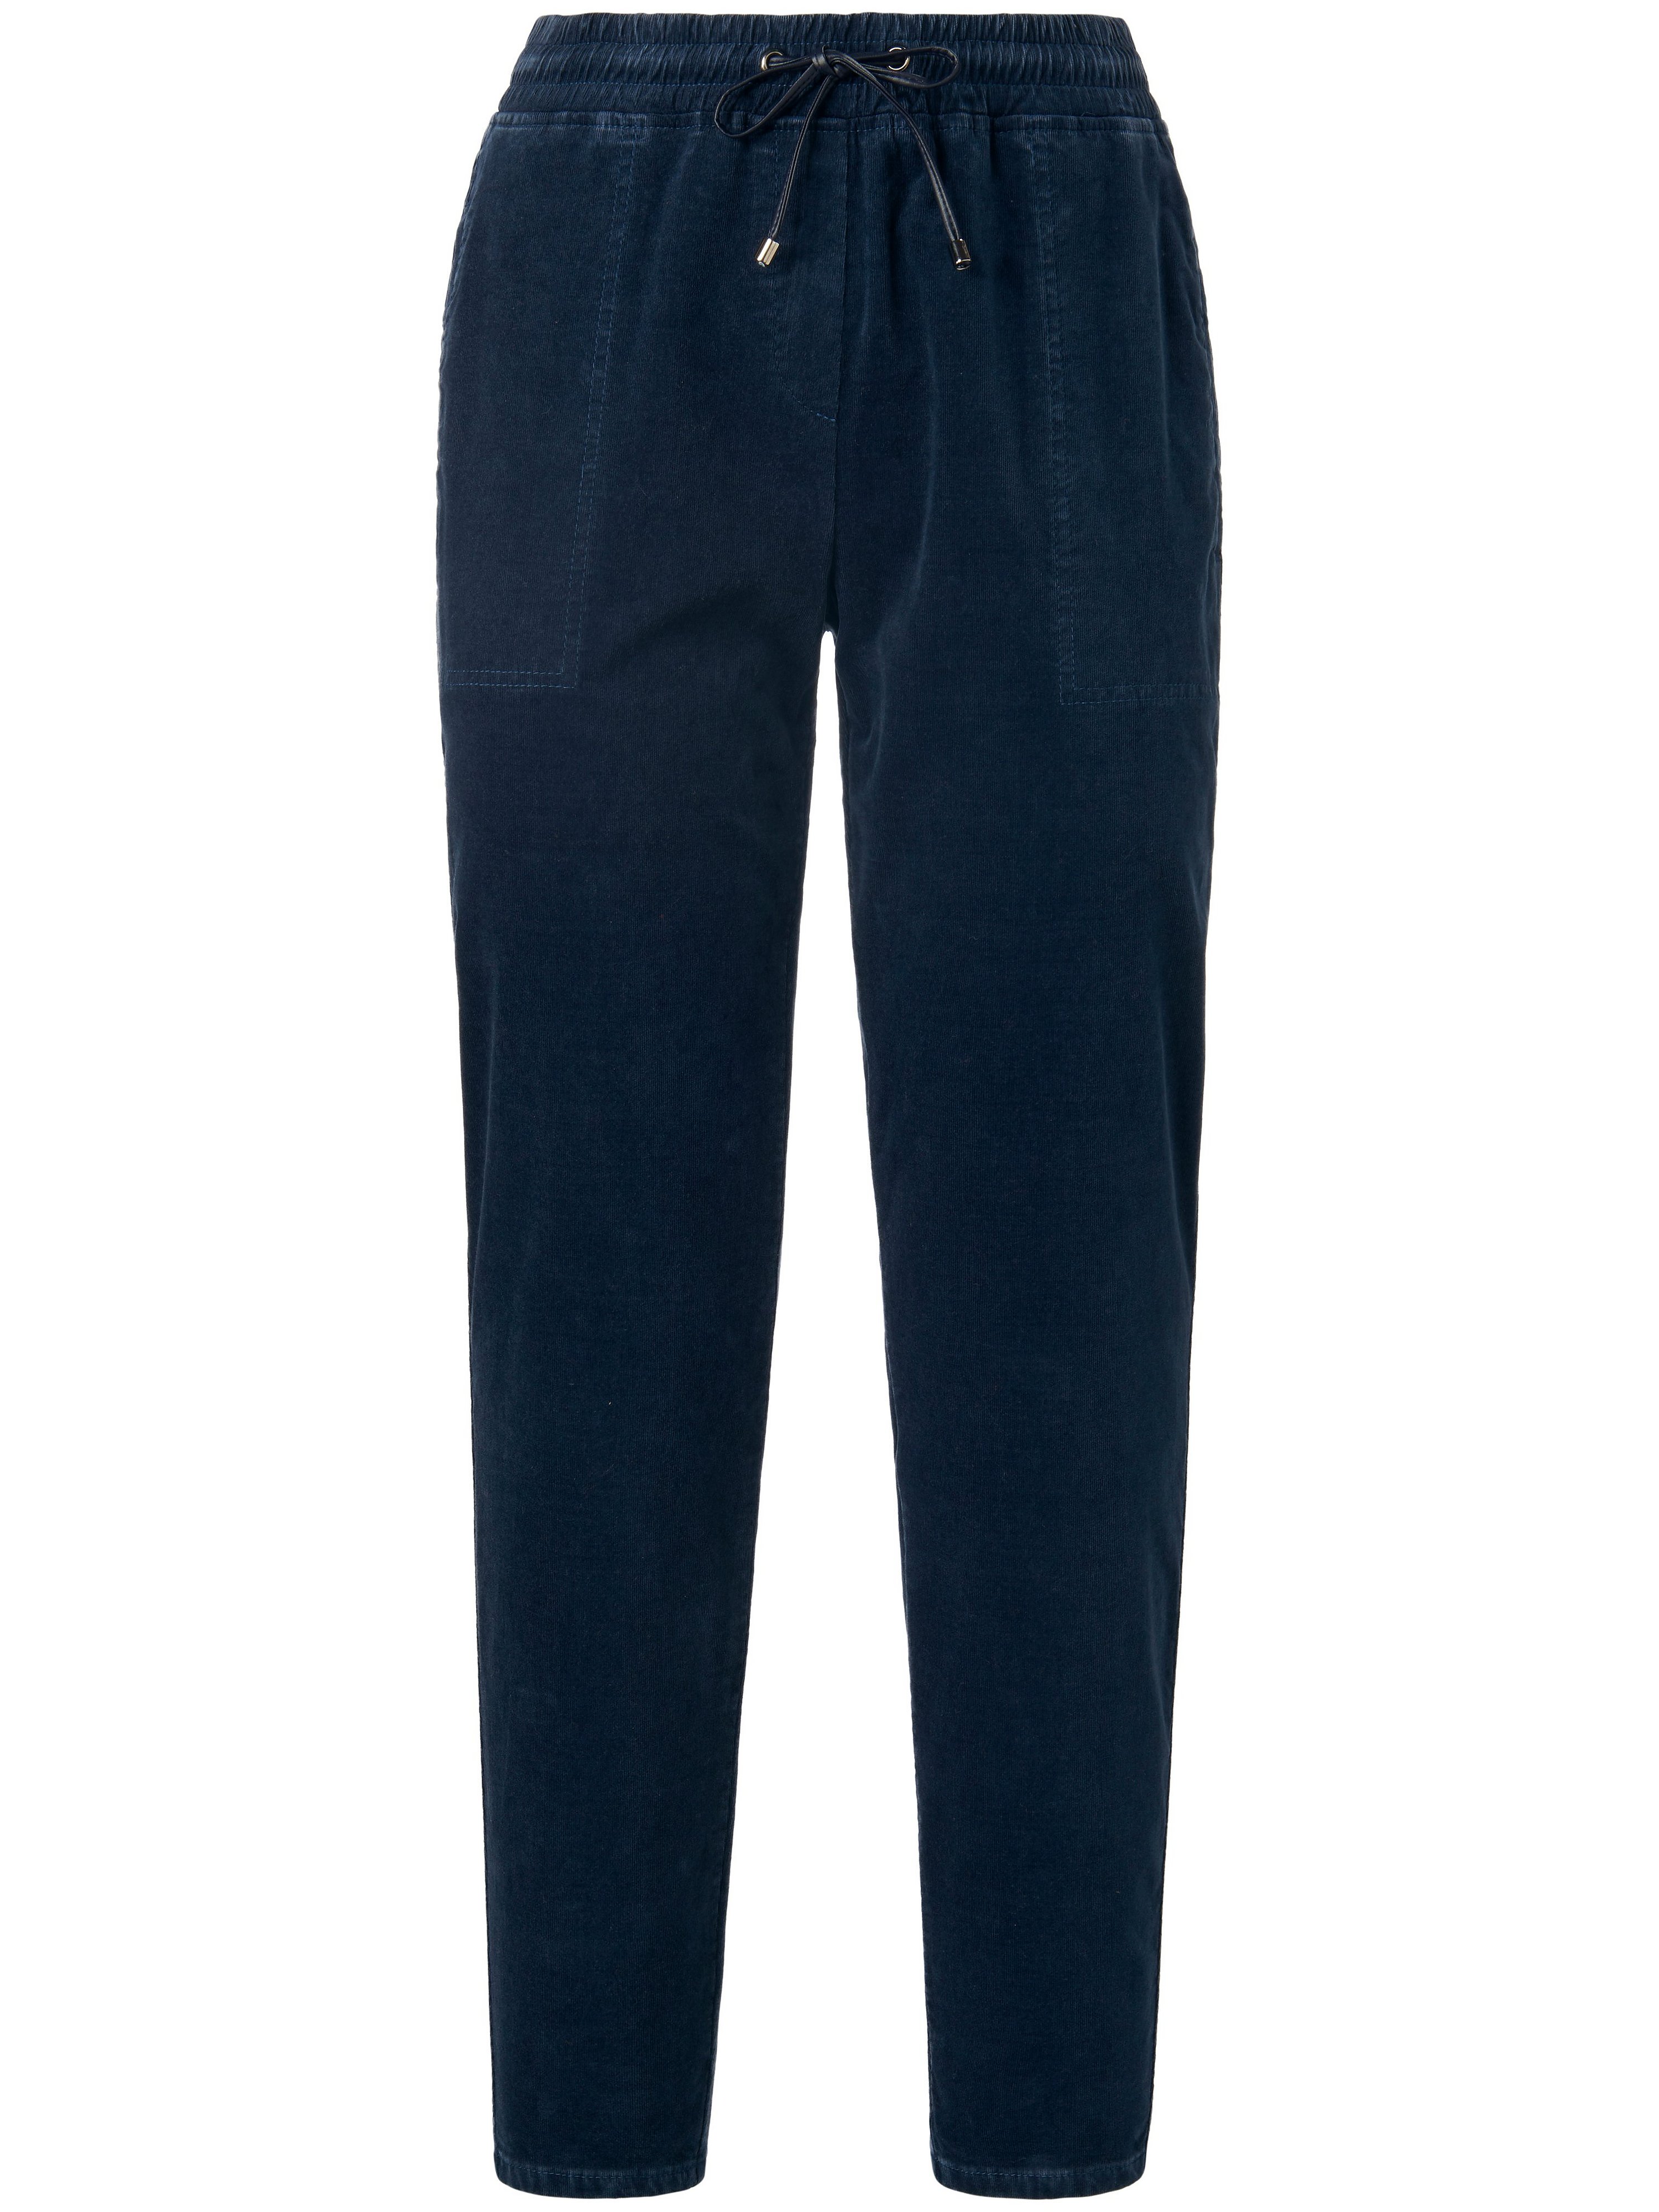 Le pantalon à taille élastiquée Modèle Sue Ankle  TONI bleu taille 38